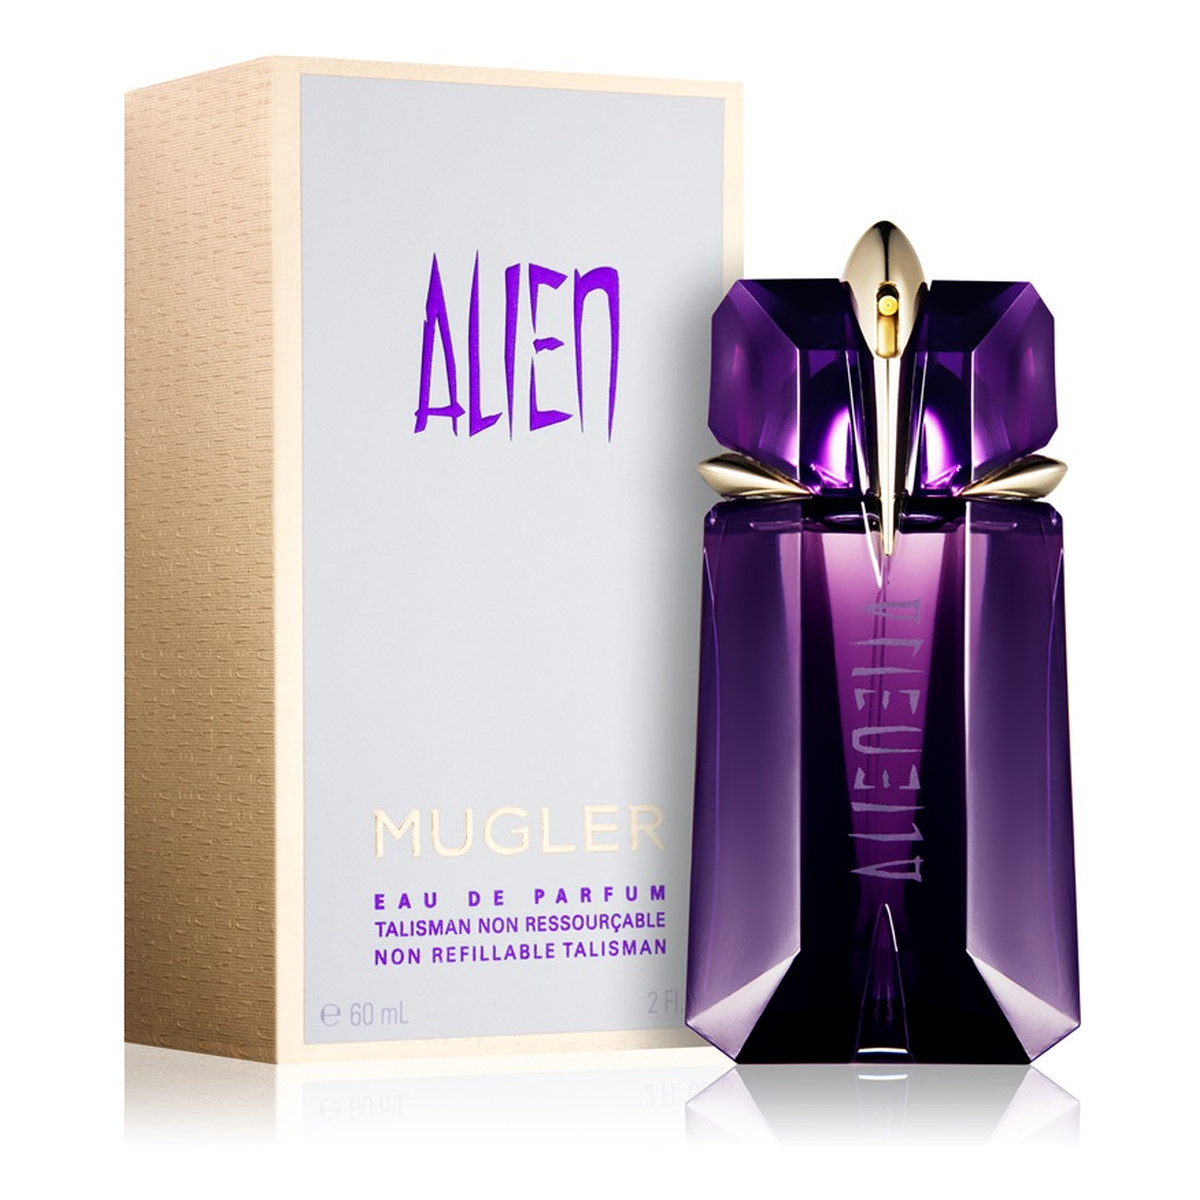 Thierry Mugler Alien Woda perfumowana 60ml